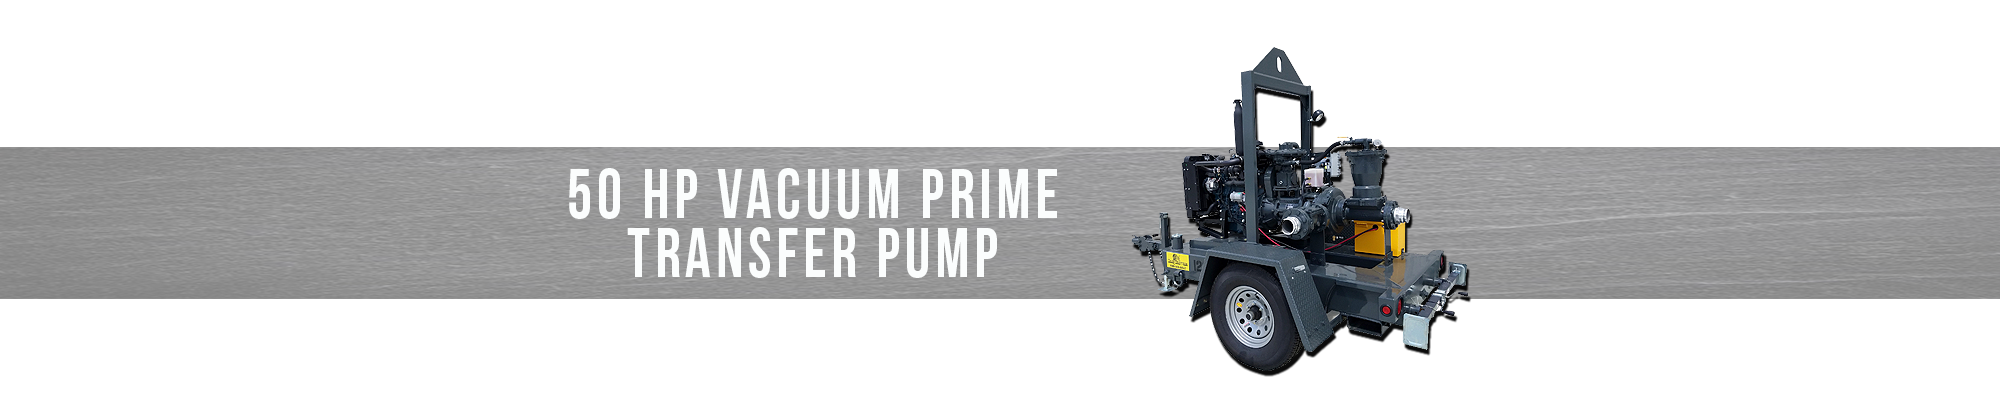 50 HP Vacuum Prime transfer pump